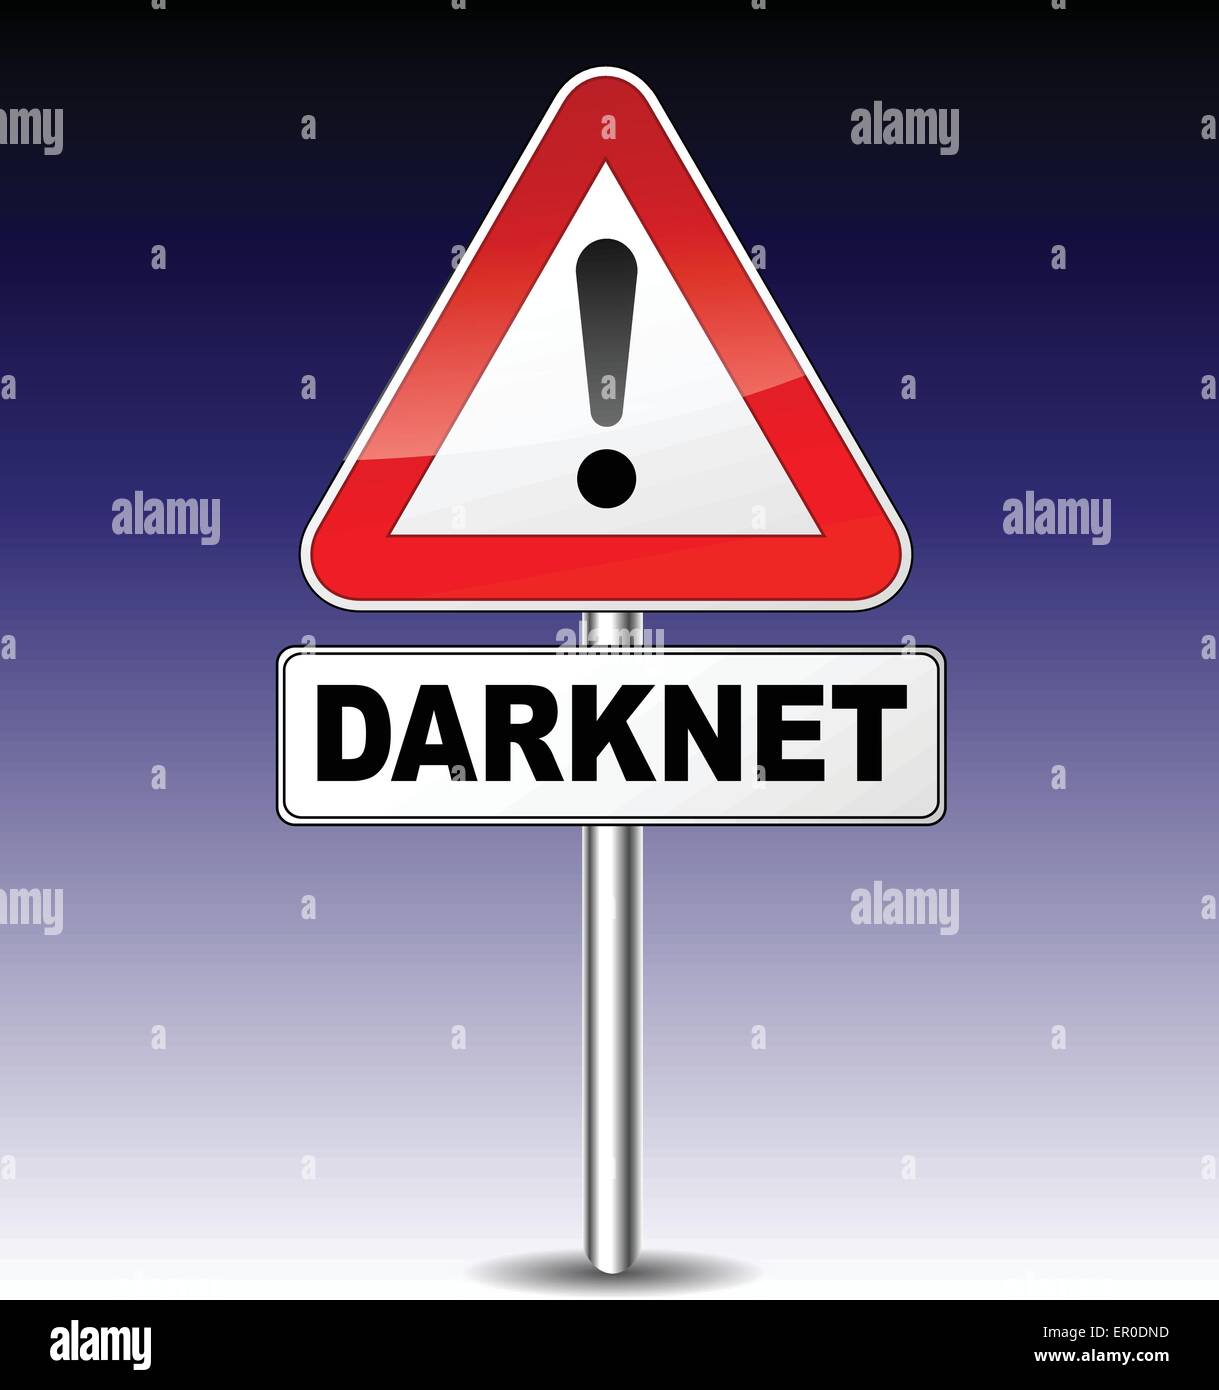 Illustrazione di darkweb segno su sfondo di notte Illustrazione Vettoriale